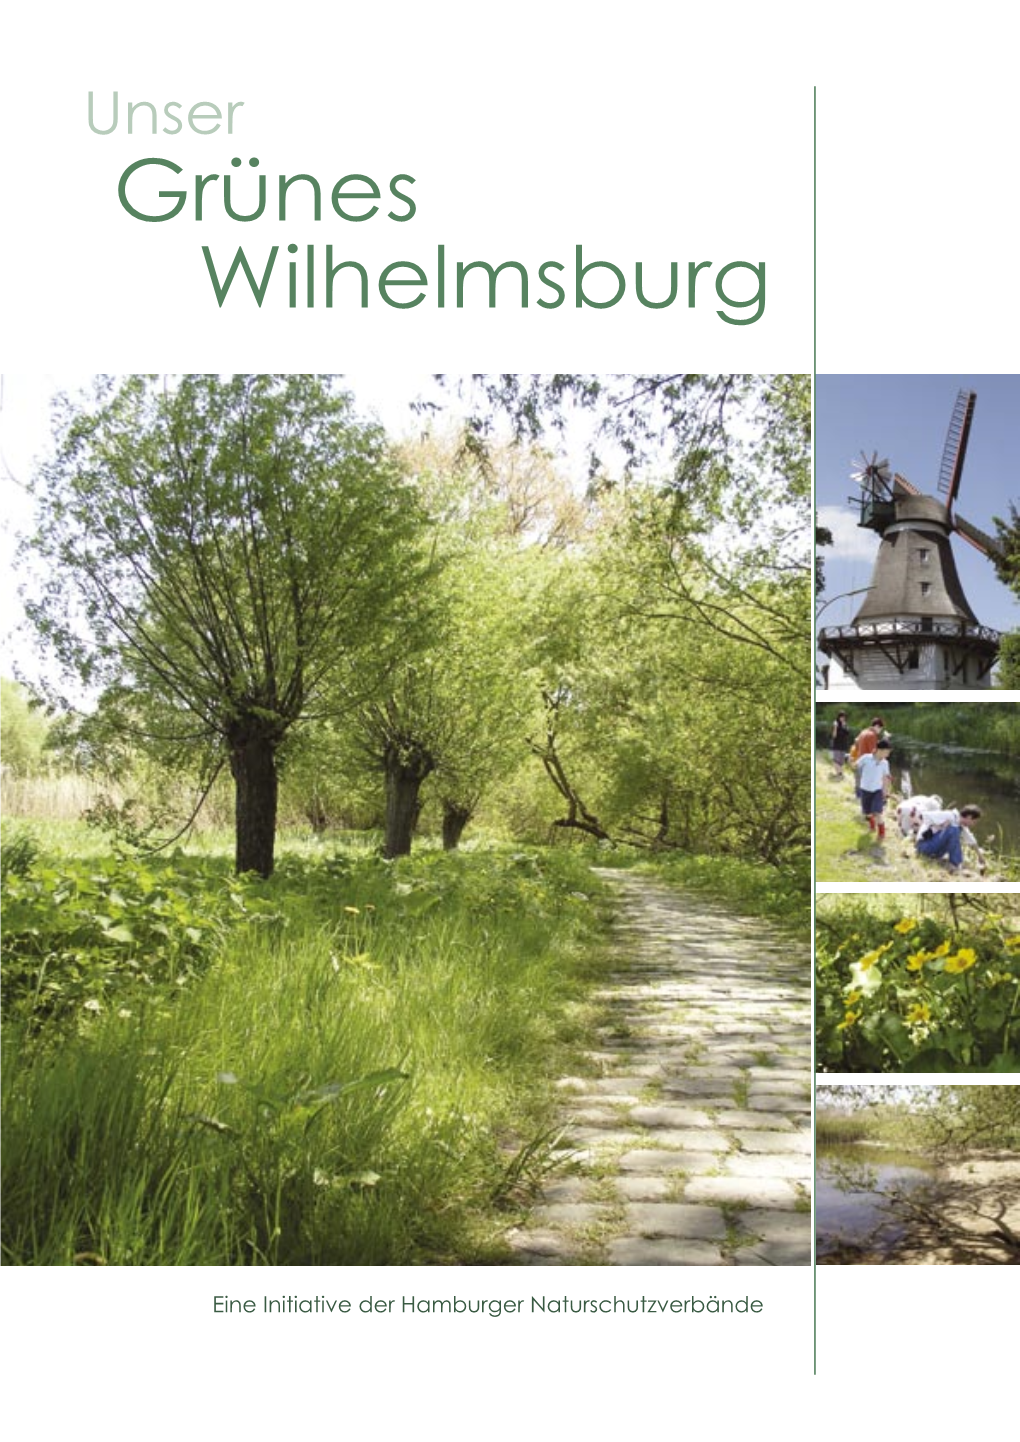 Unser Grünes Wilhelmsburg